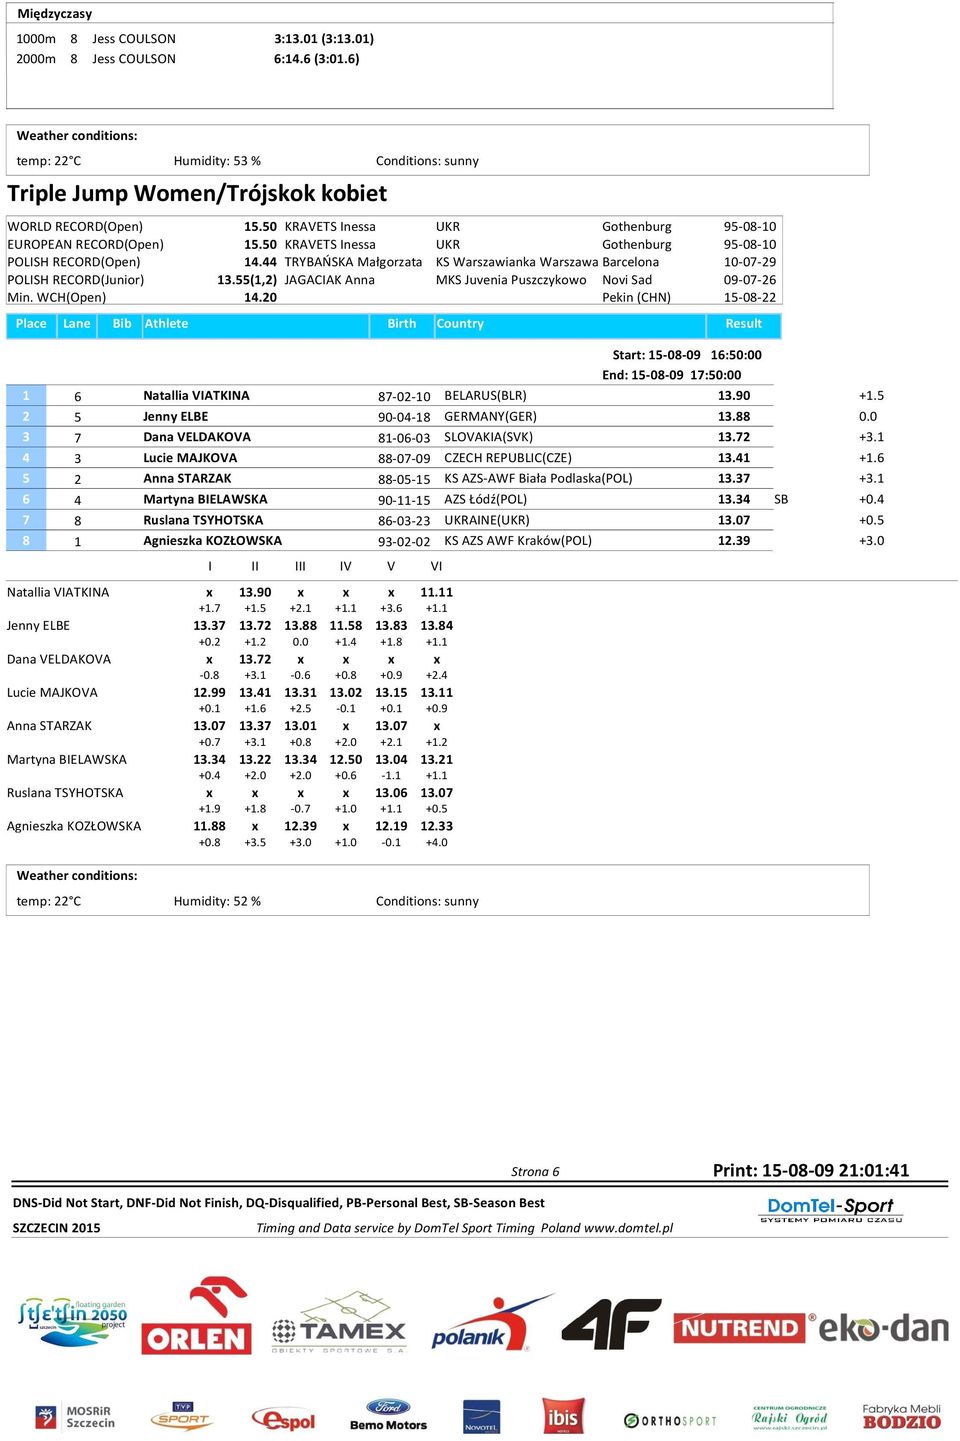 44 TRYBAŃSKA Małgorzata KS Warszawianka Warszawa Barcelona 10-07-29 POLISH RECORD(Junior) 13.55(1,2) JAGACIAK Anna MKS Juvenia Puszczykowo Novi Sad 09-07-26 Min. WCH(Open) 14.